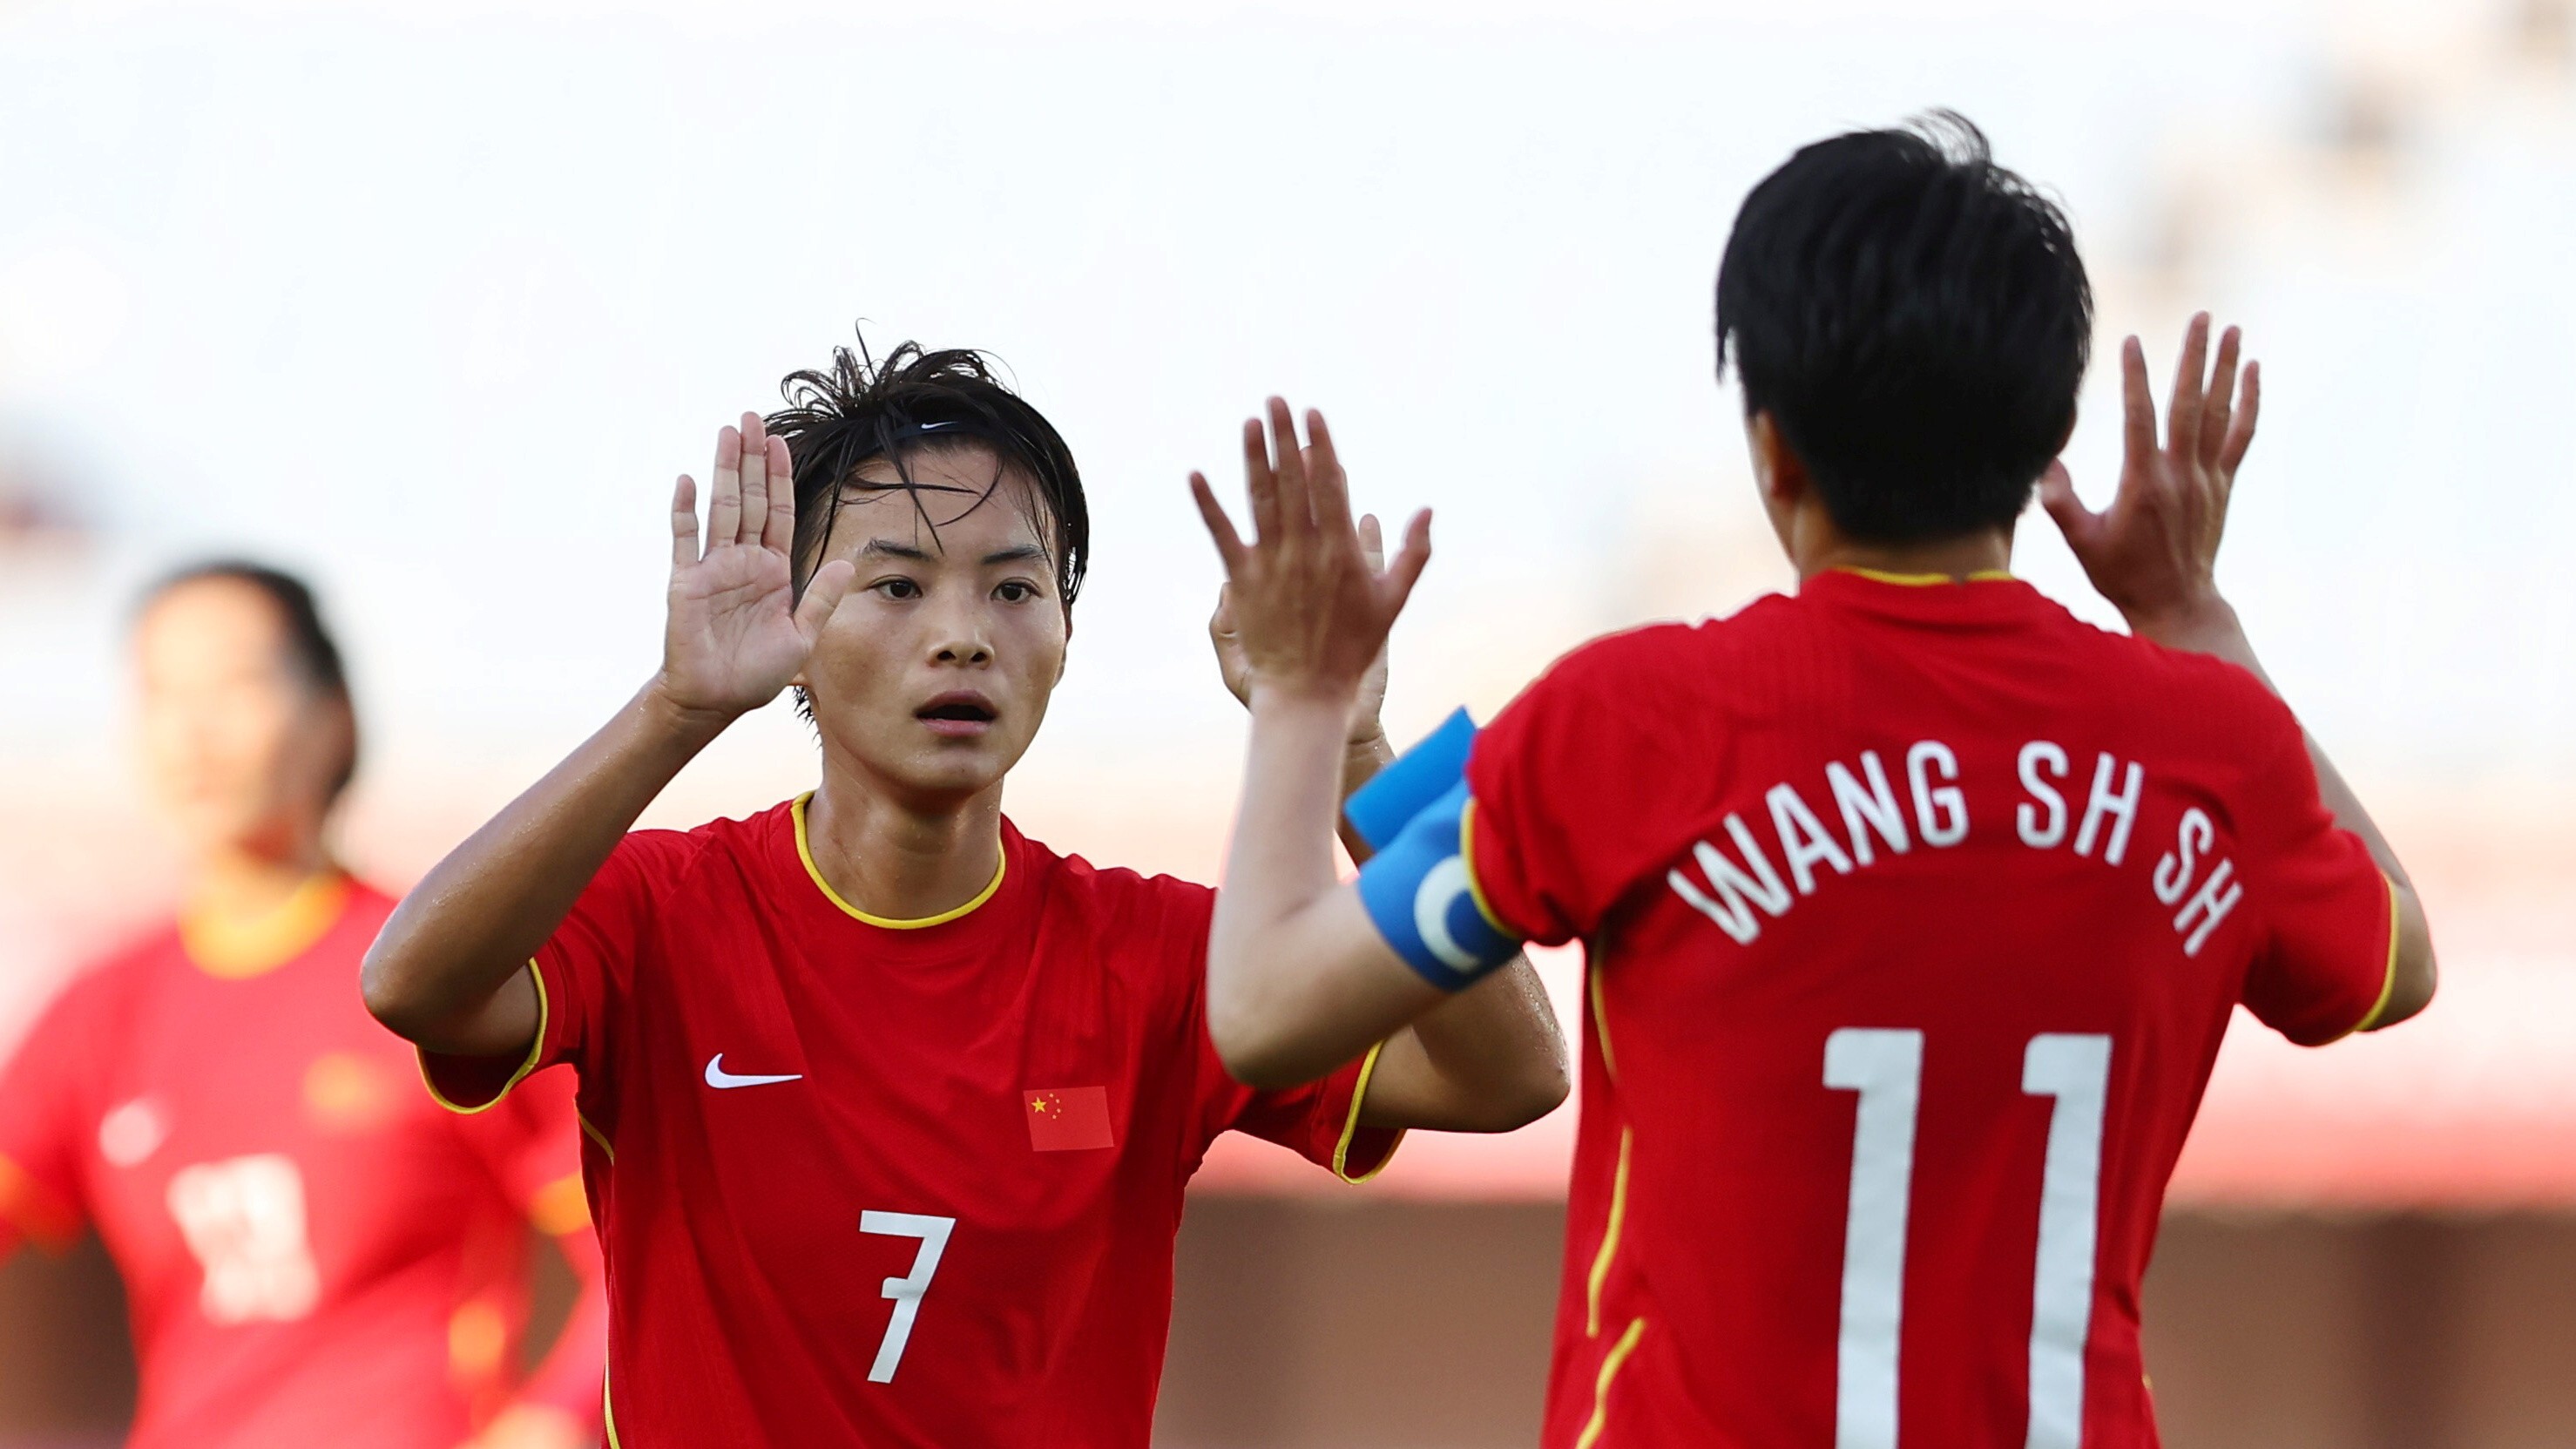 央视CCTV5直播中国女足对阵日本 击败对手就能夺冠 姑娘们加油啊